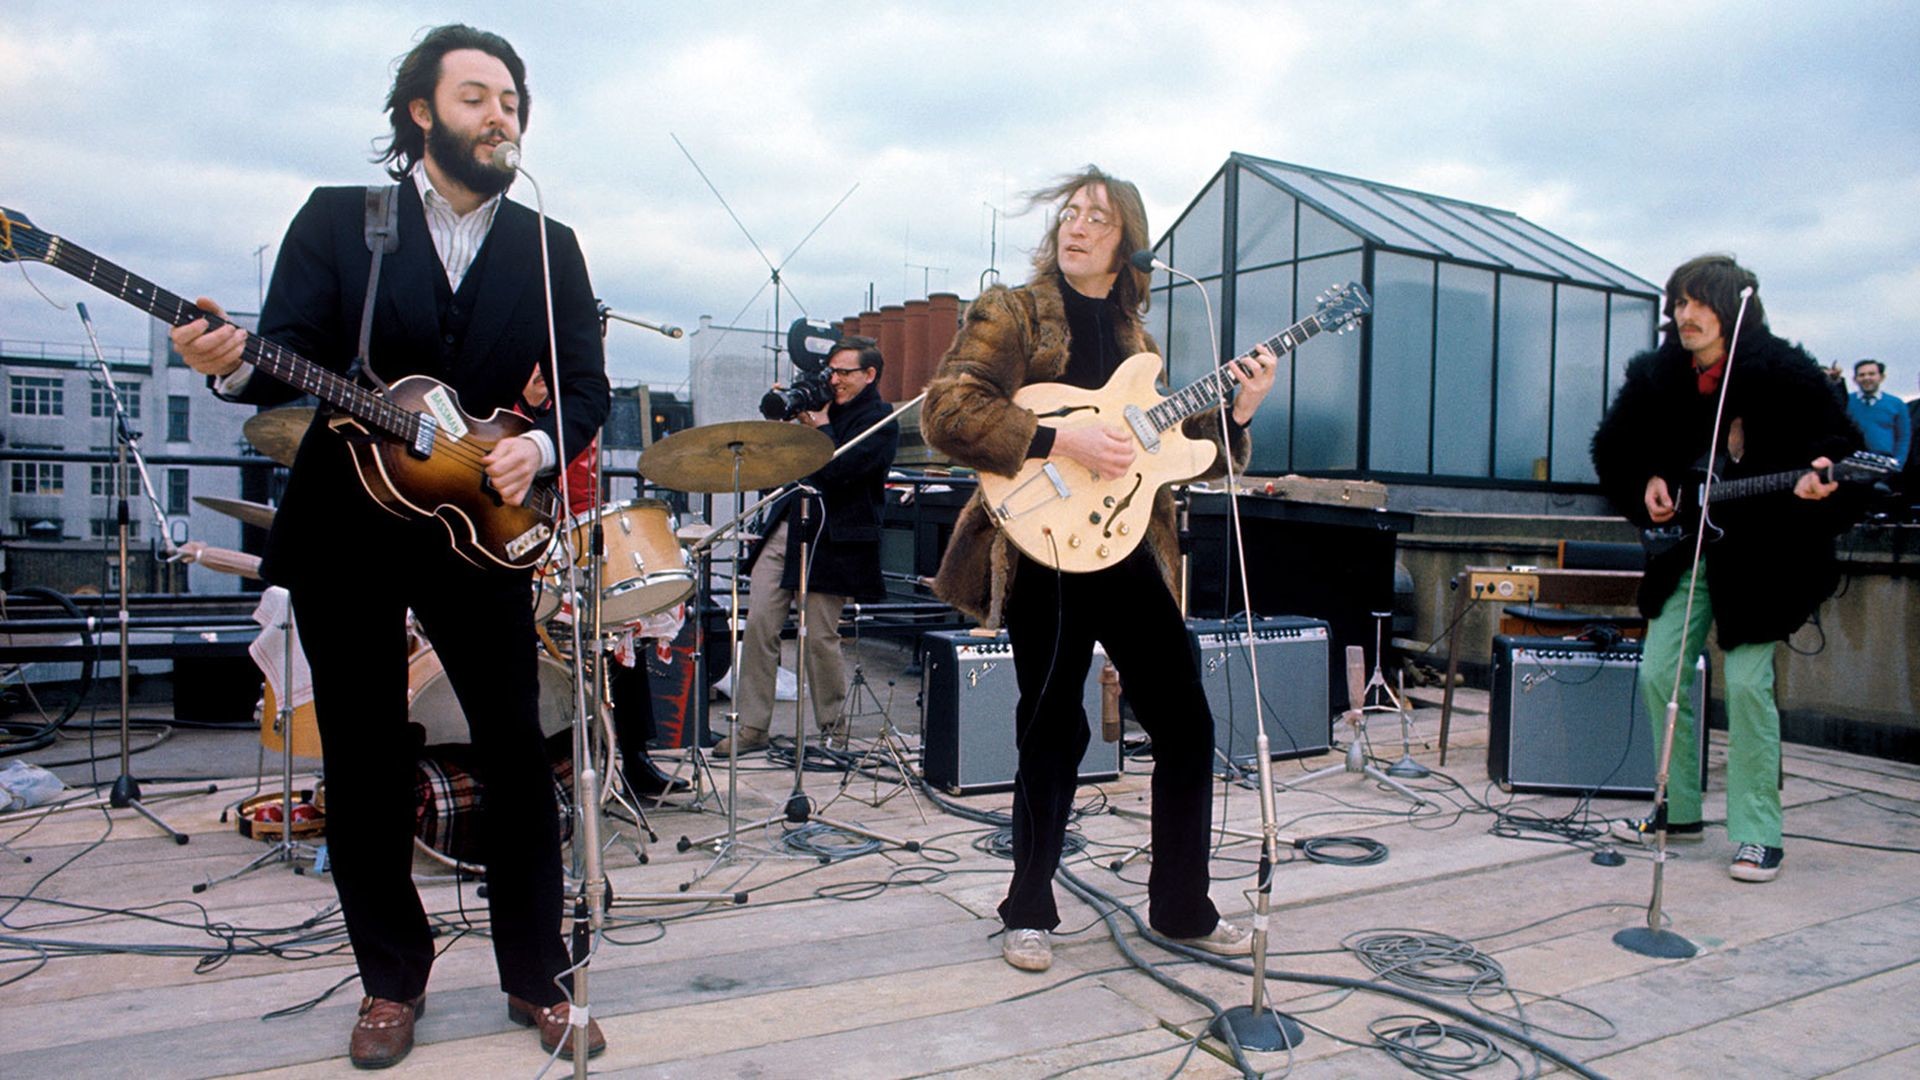 Фото - The Beatles: Get Back — Концерт на крыше: 1920x1080 / 363.01 Кб